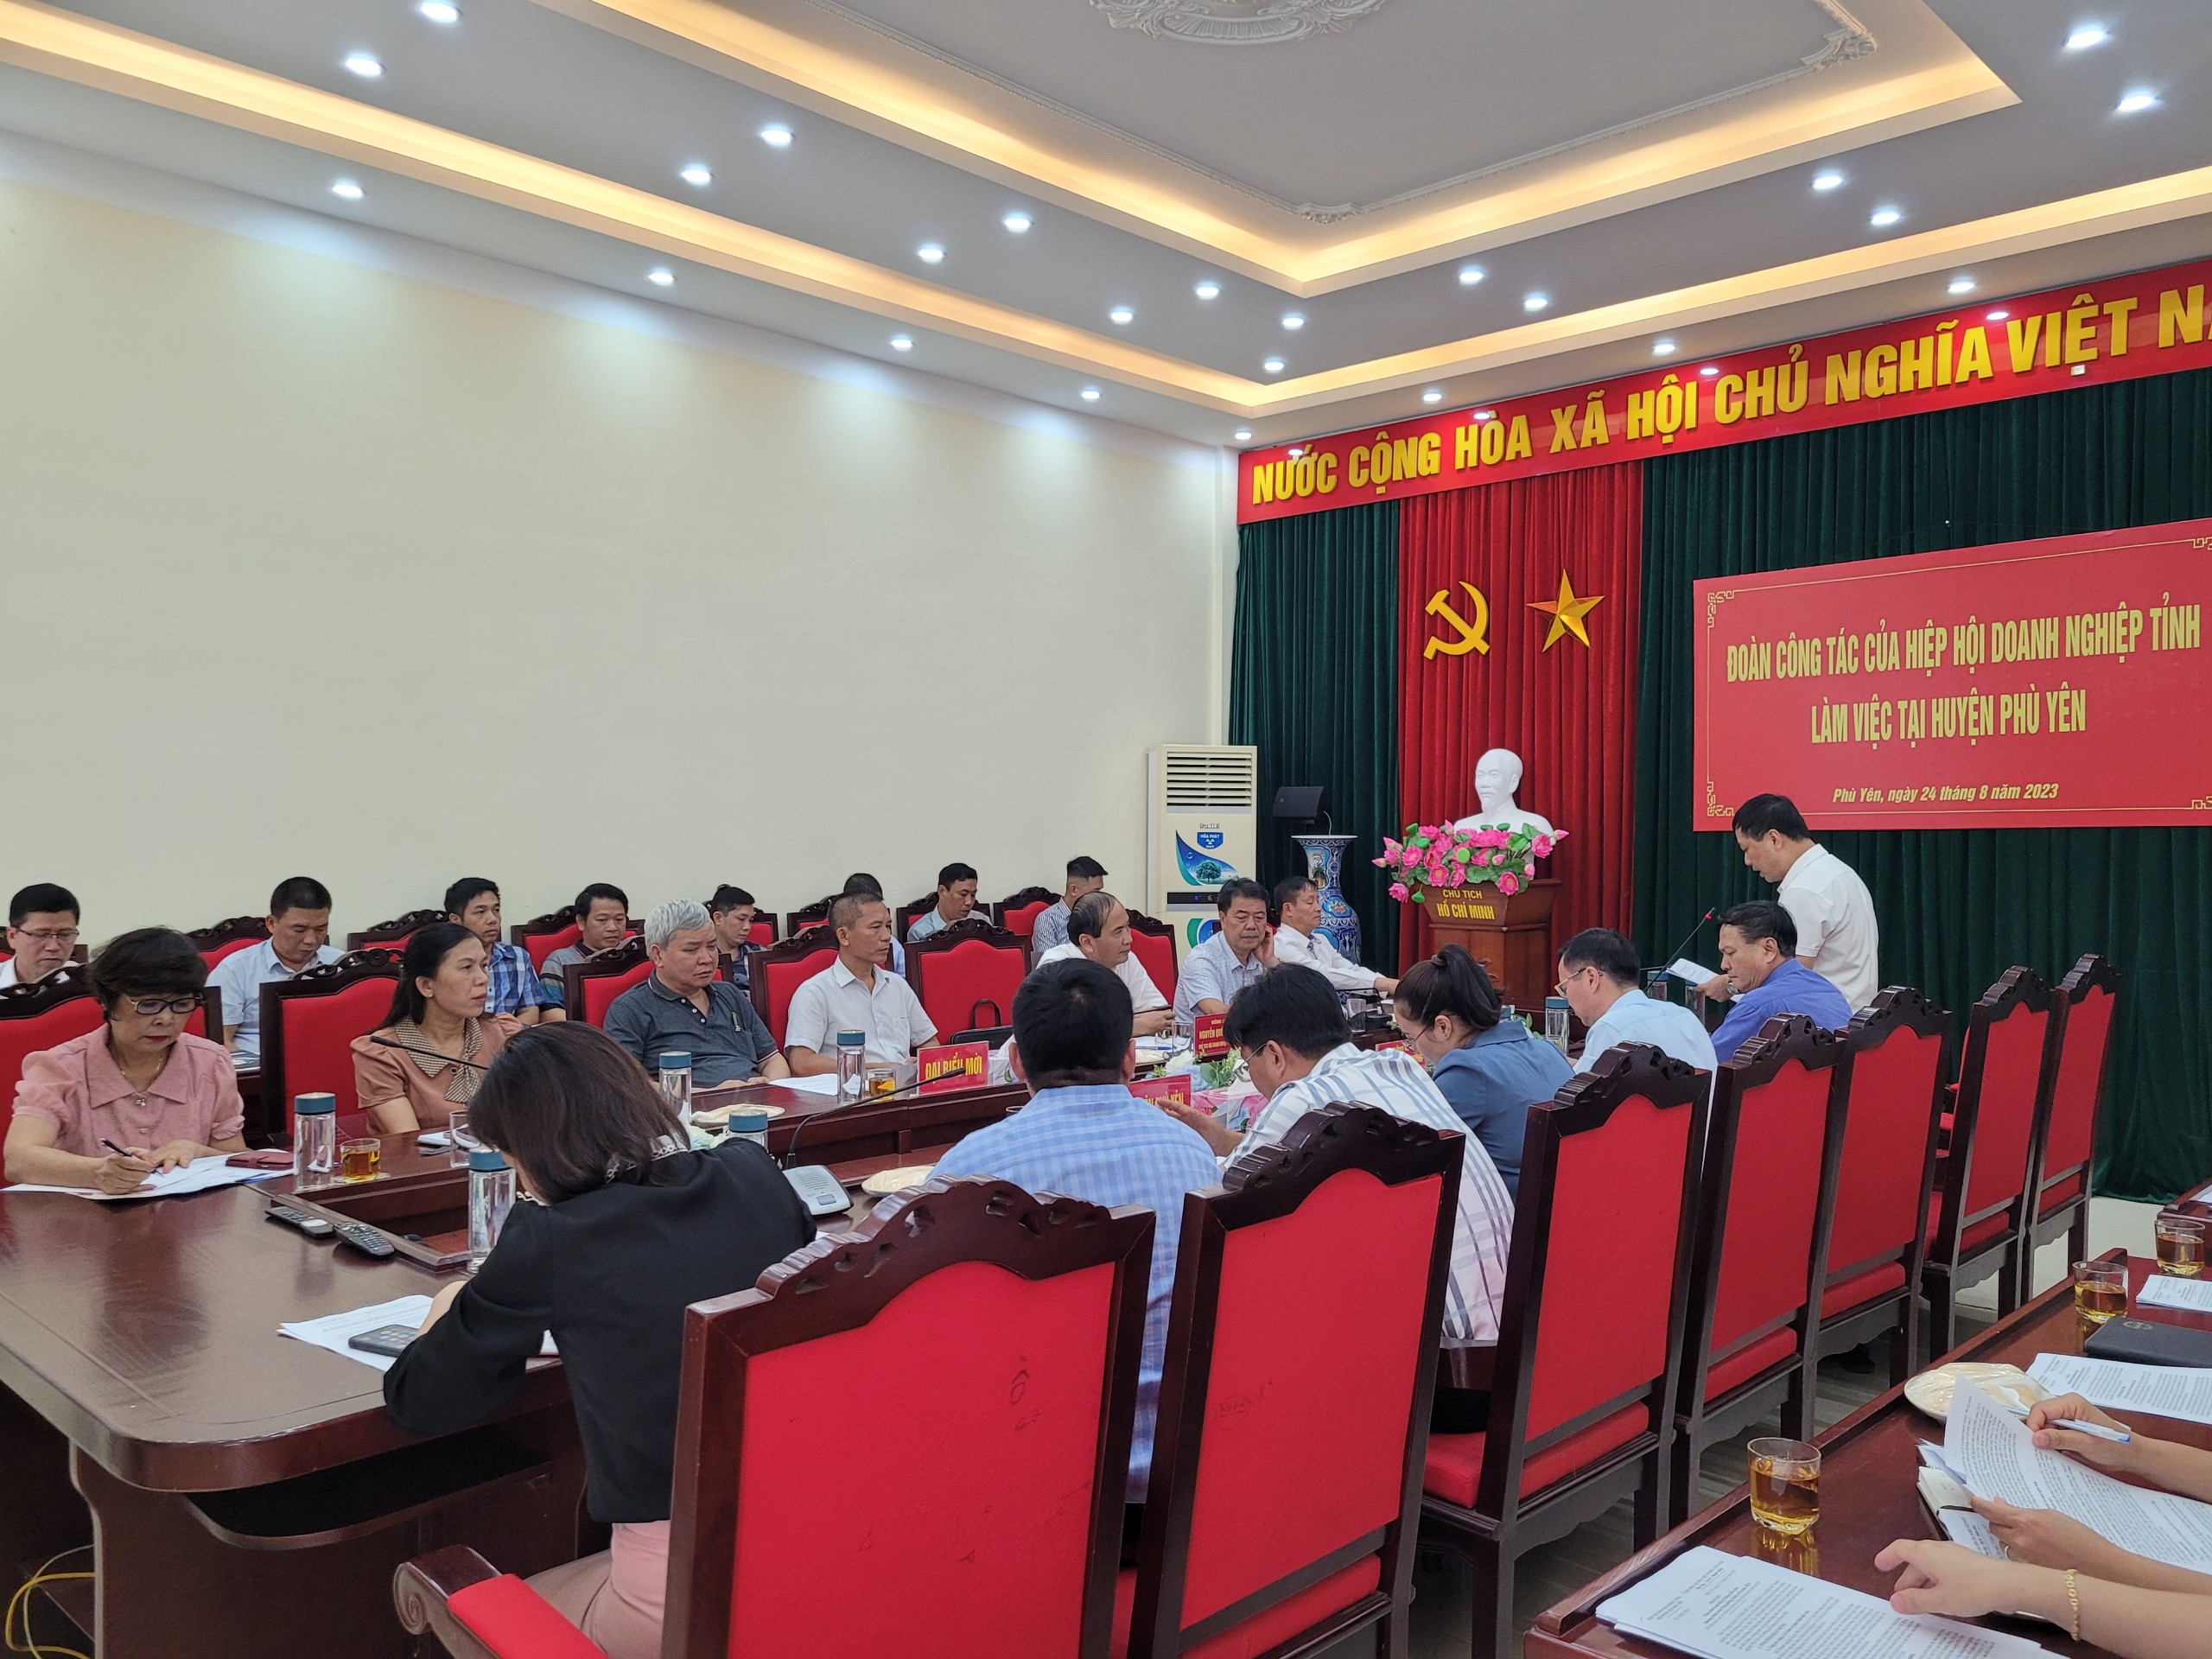 Hiệp hội Doanh nghiệp tỉnh Sơn La làm việc với UBND huyện Phù Yên